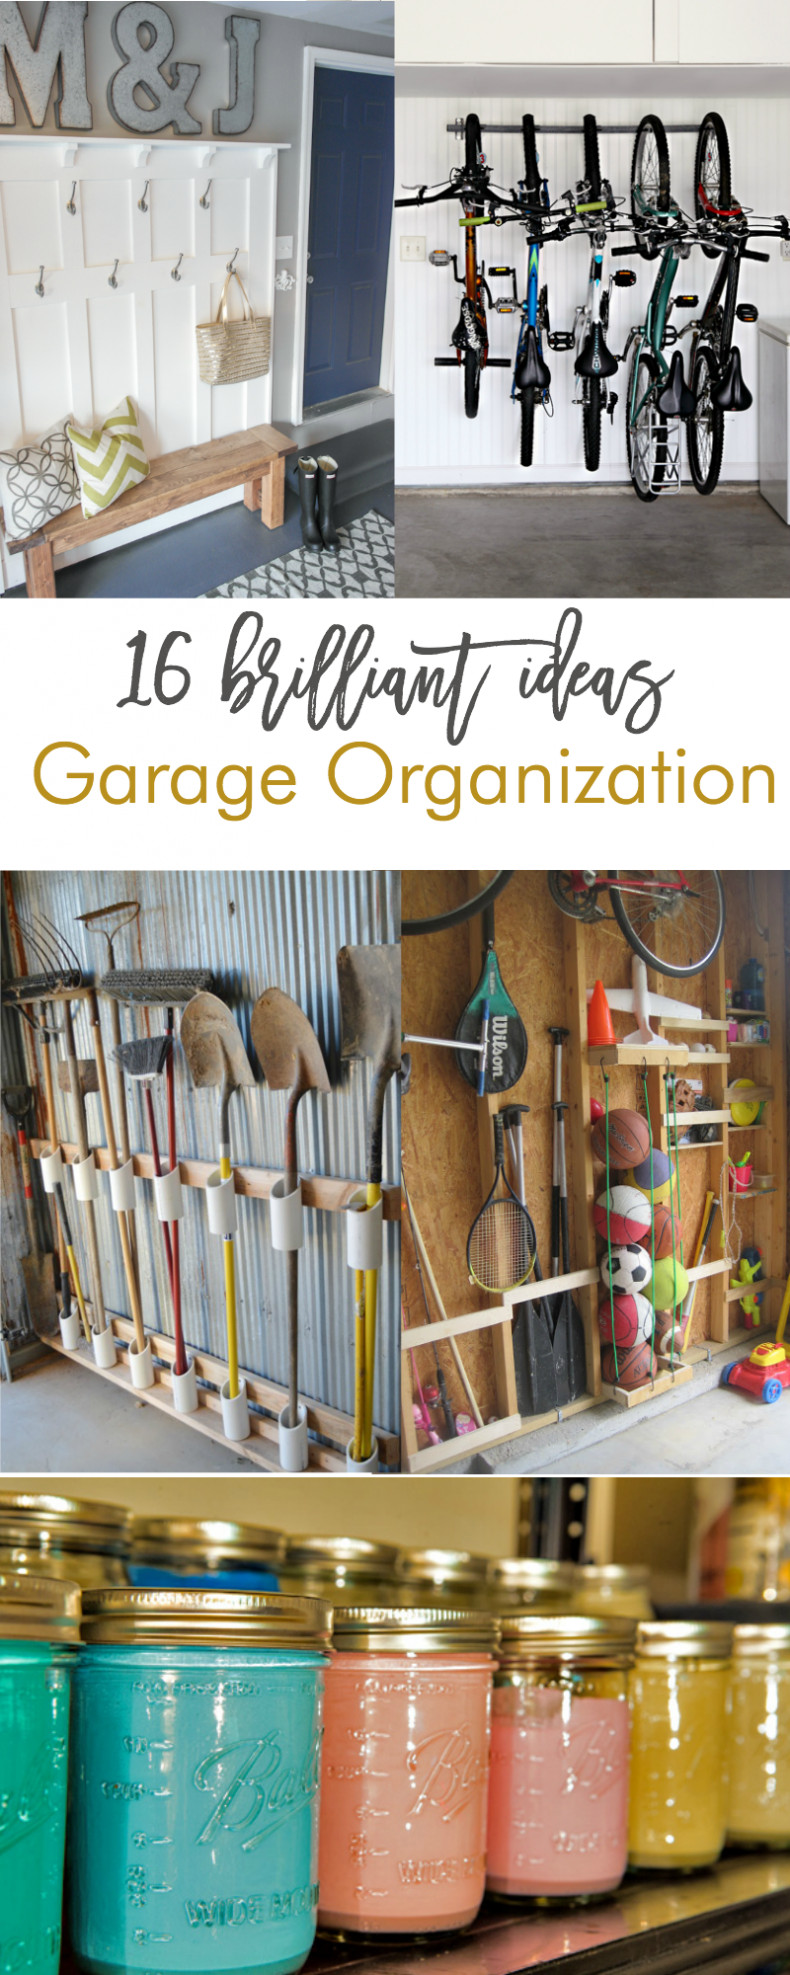 Diy Garage Organizing
 16 Brilliant DIY Garage Organization Ideas